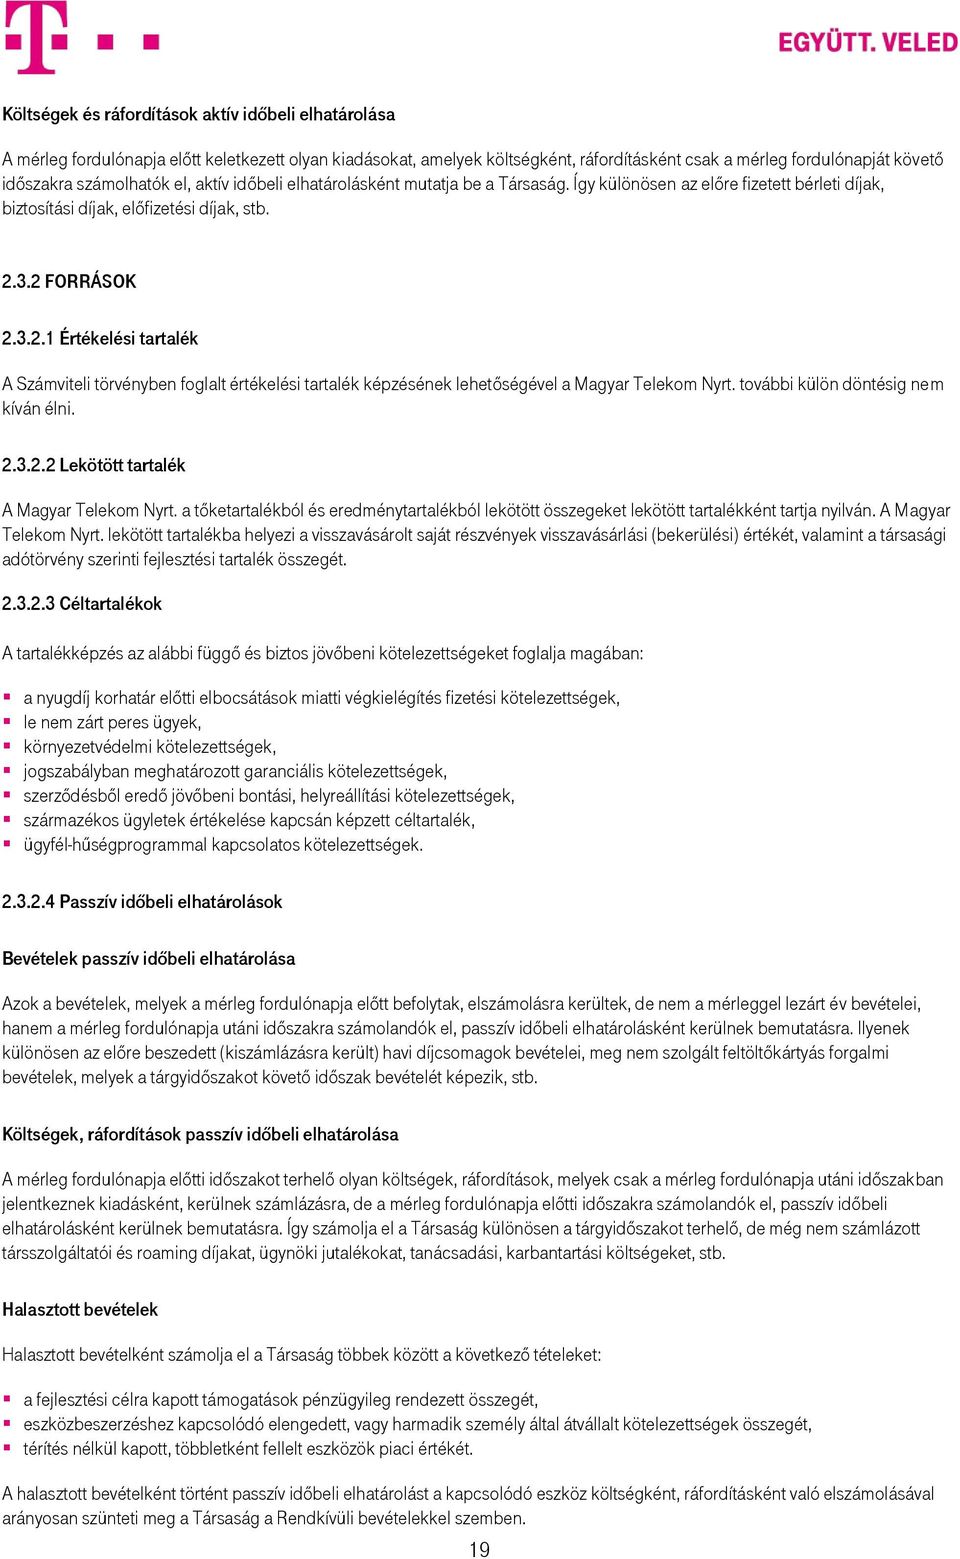 3.2 FORRÁSOK 2.3.2.1 Értékelési tartalék A Számviteli törvényben foglalt értékelési tartalék képzésének lehetőségével a Magyar Telekom Nyrt. további külön döntésig nem kíván élni. 2.3.2.2 Lekötött tartalék A Magyar Telekom Nyrt.